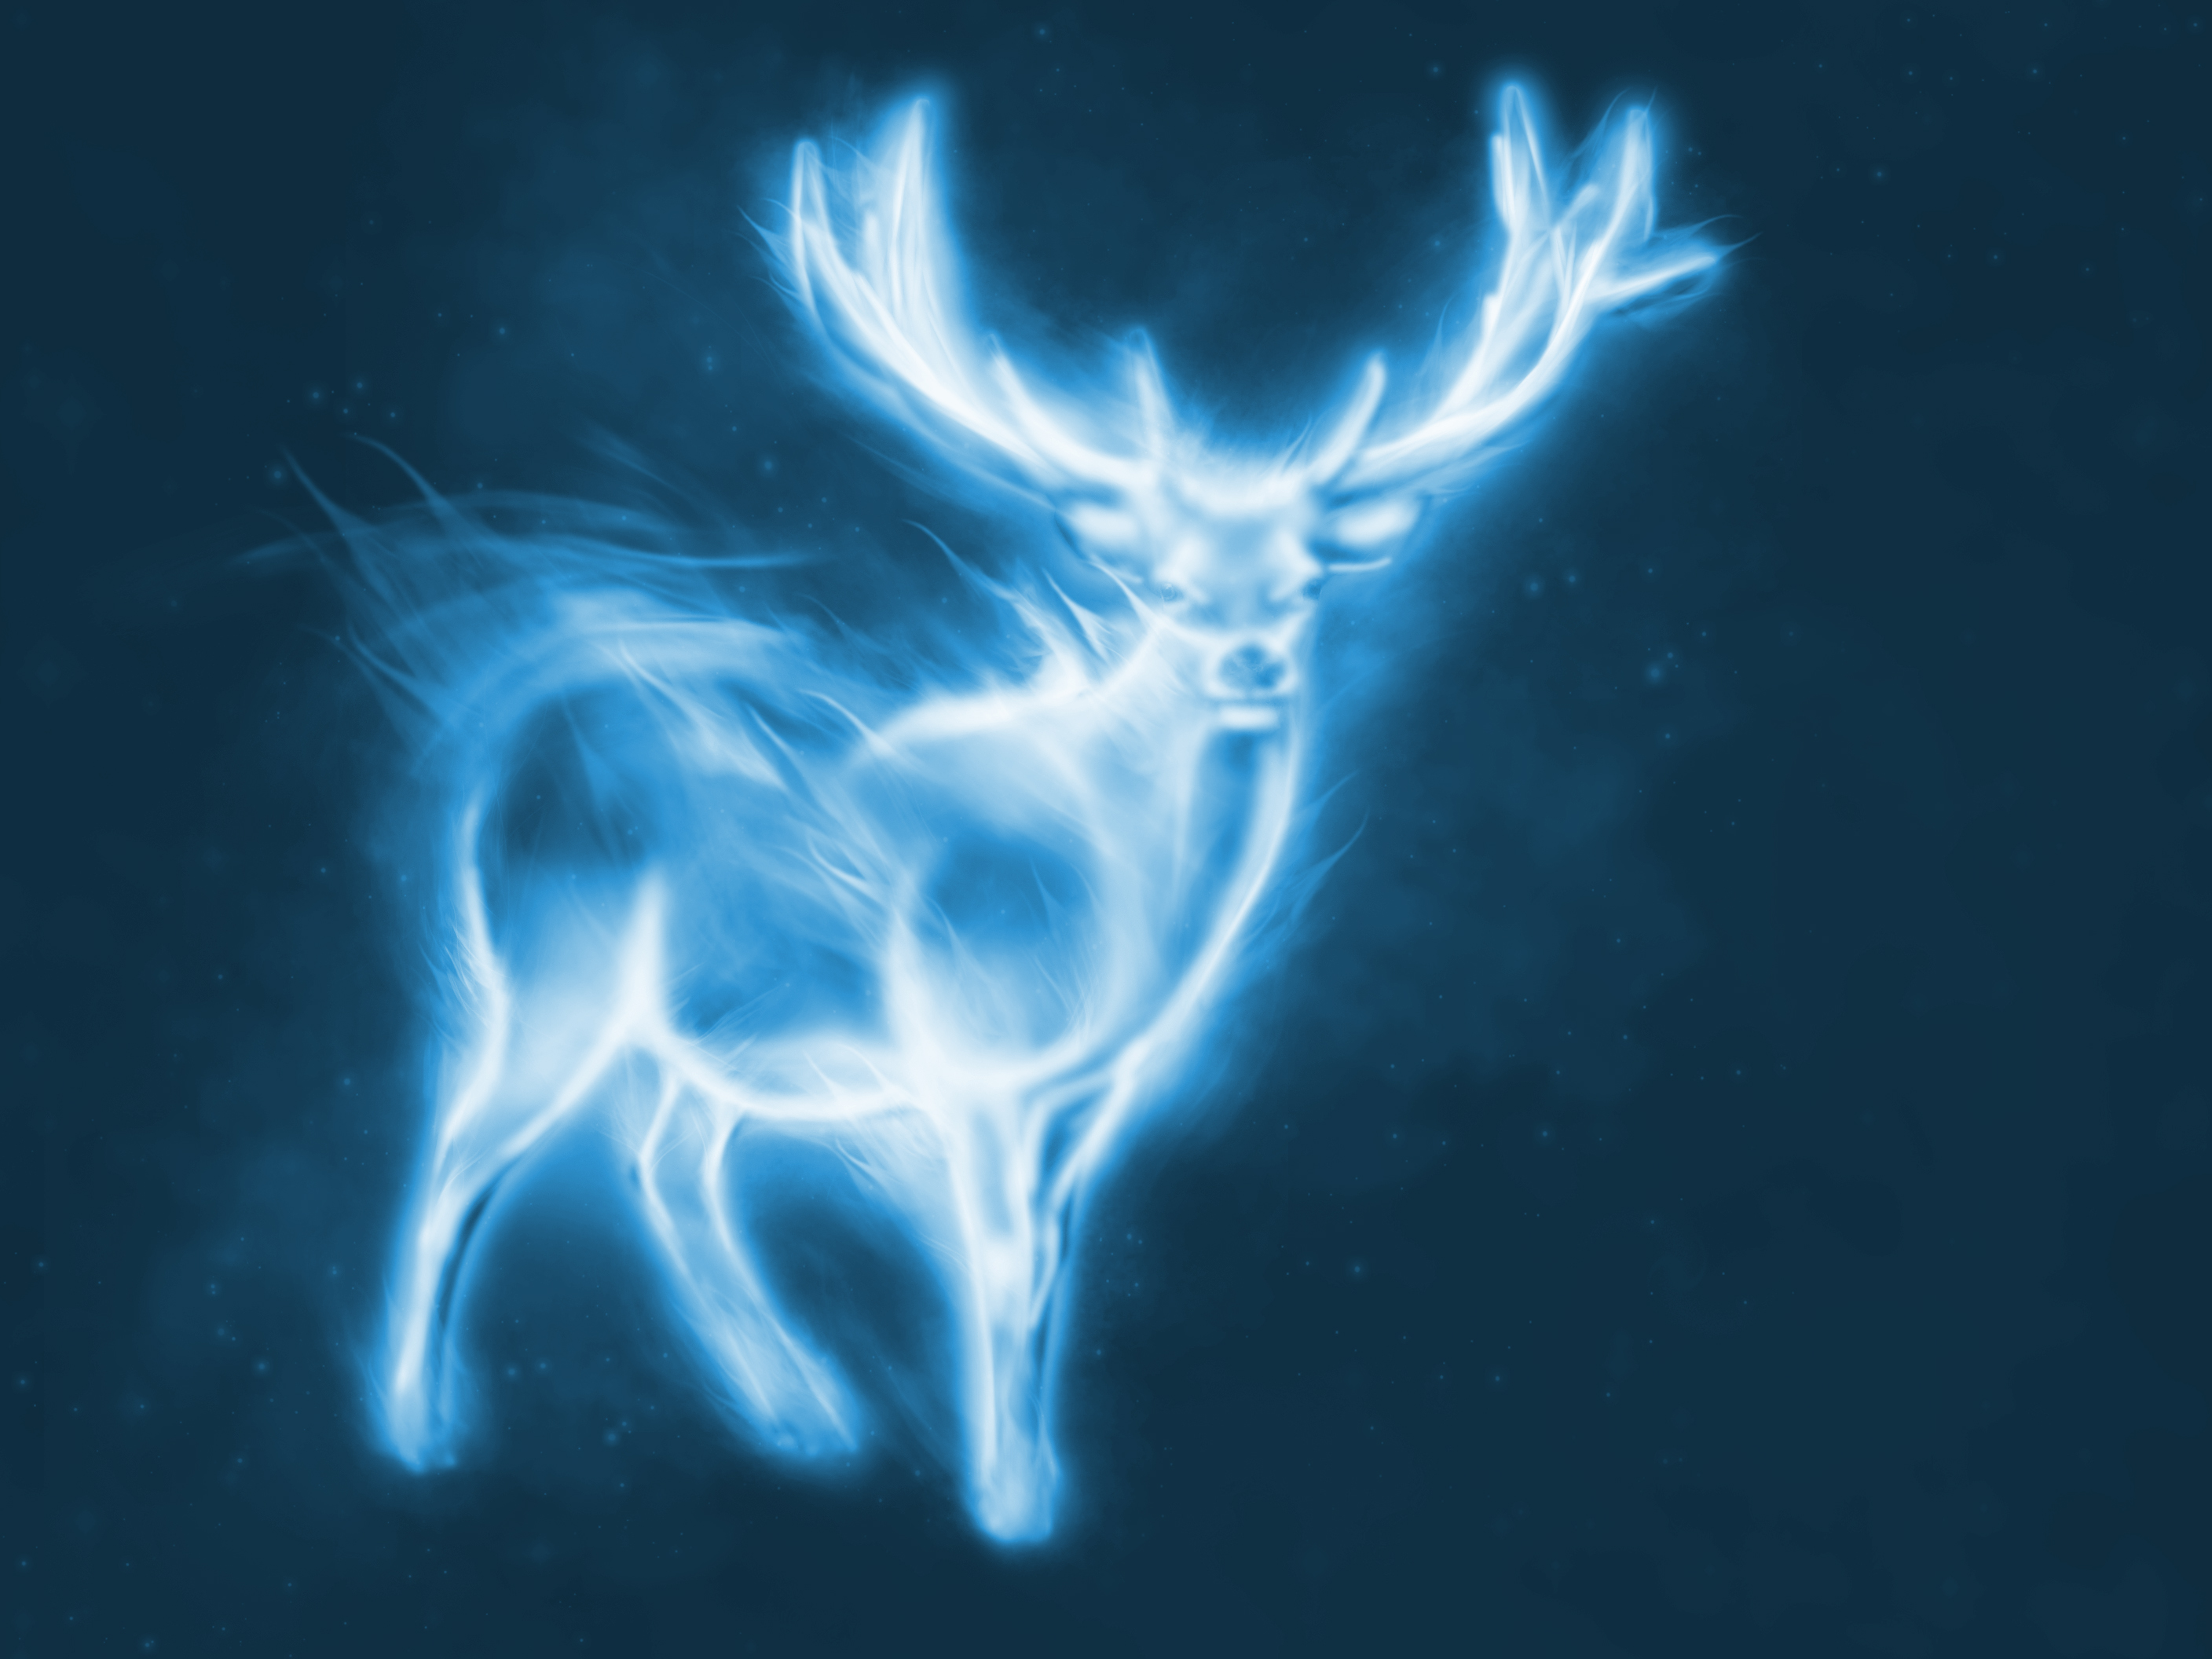 Deer Always Harry Potter Wallpapers